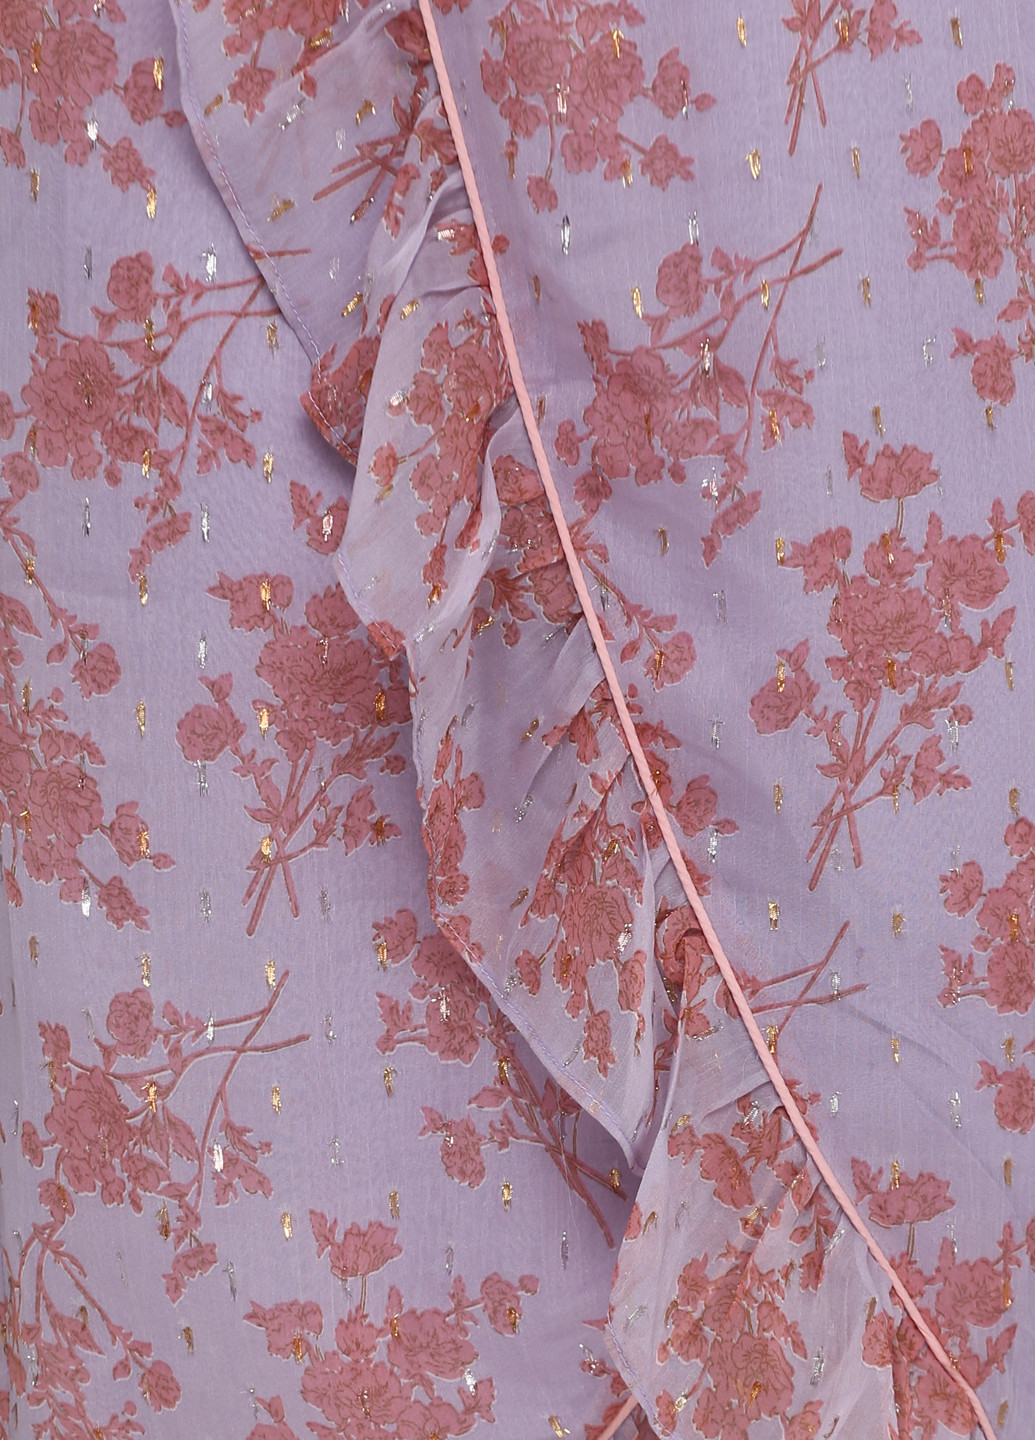 Сиреневая кэжуал цветочной расцветки юбка Friendtex на запах